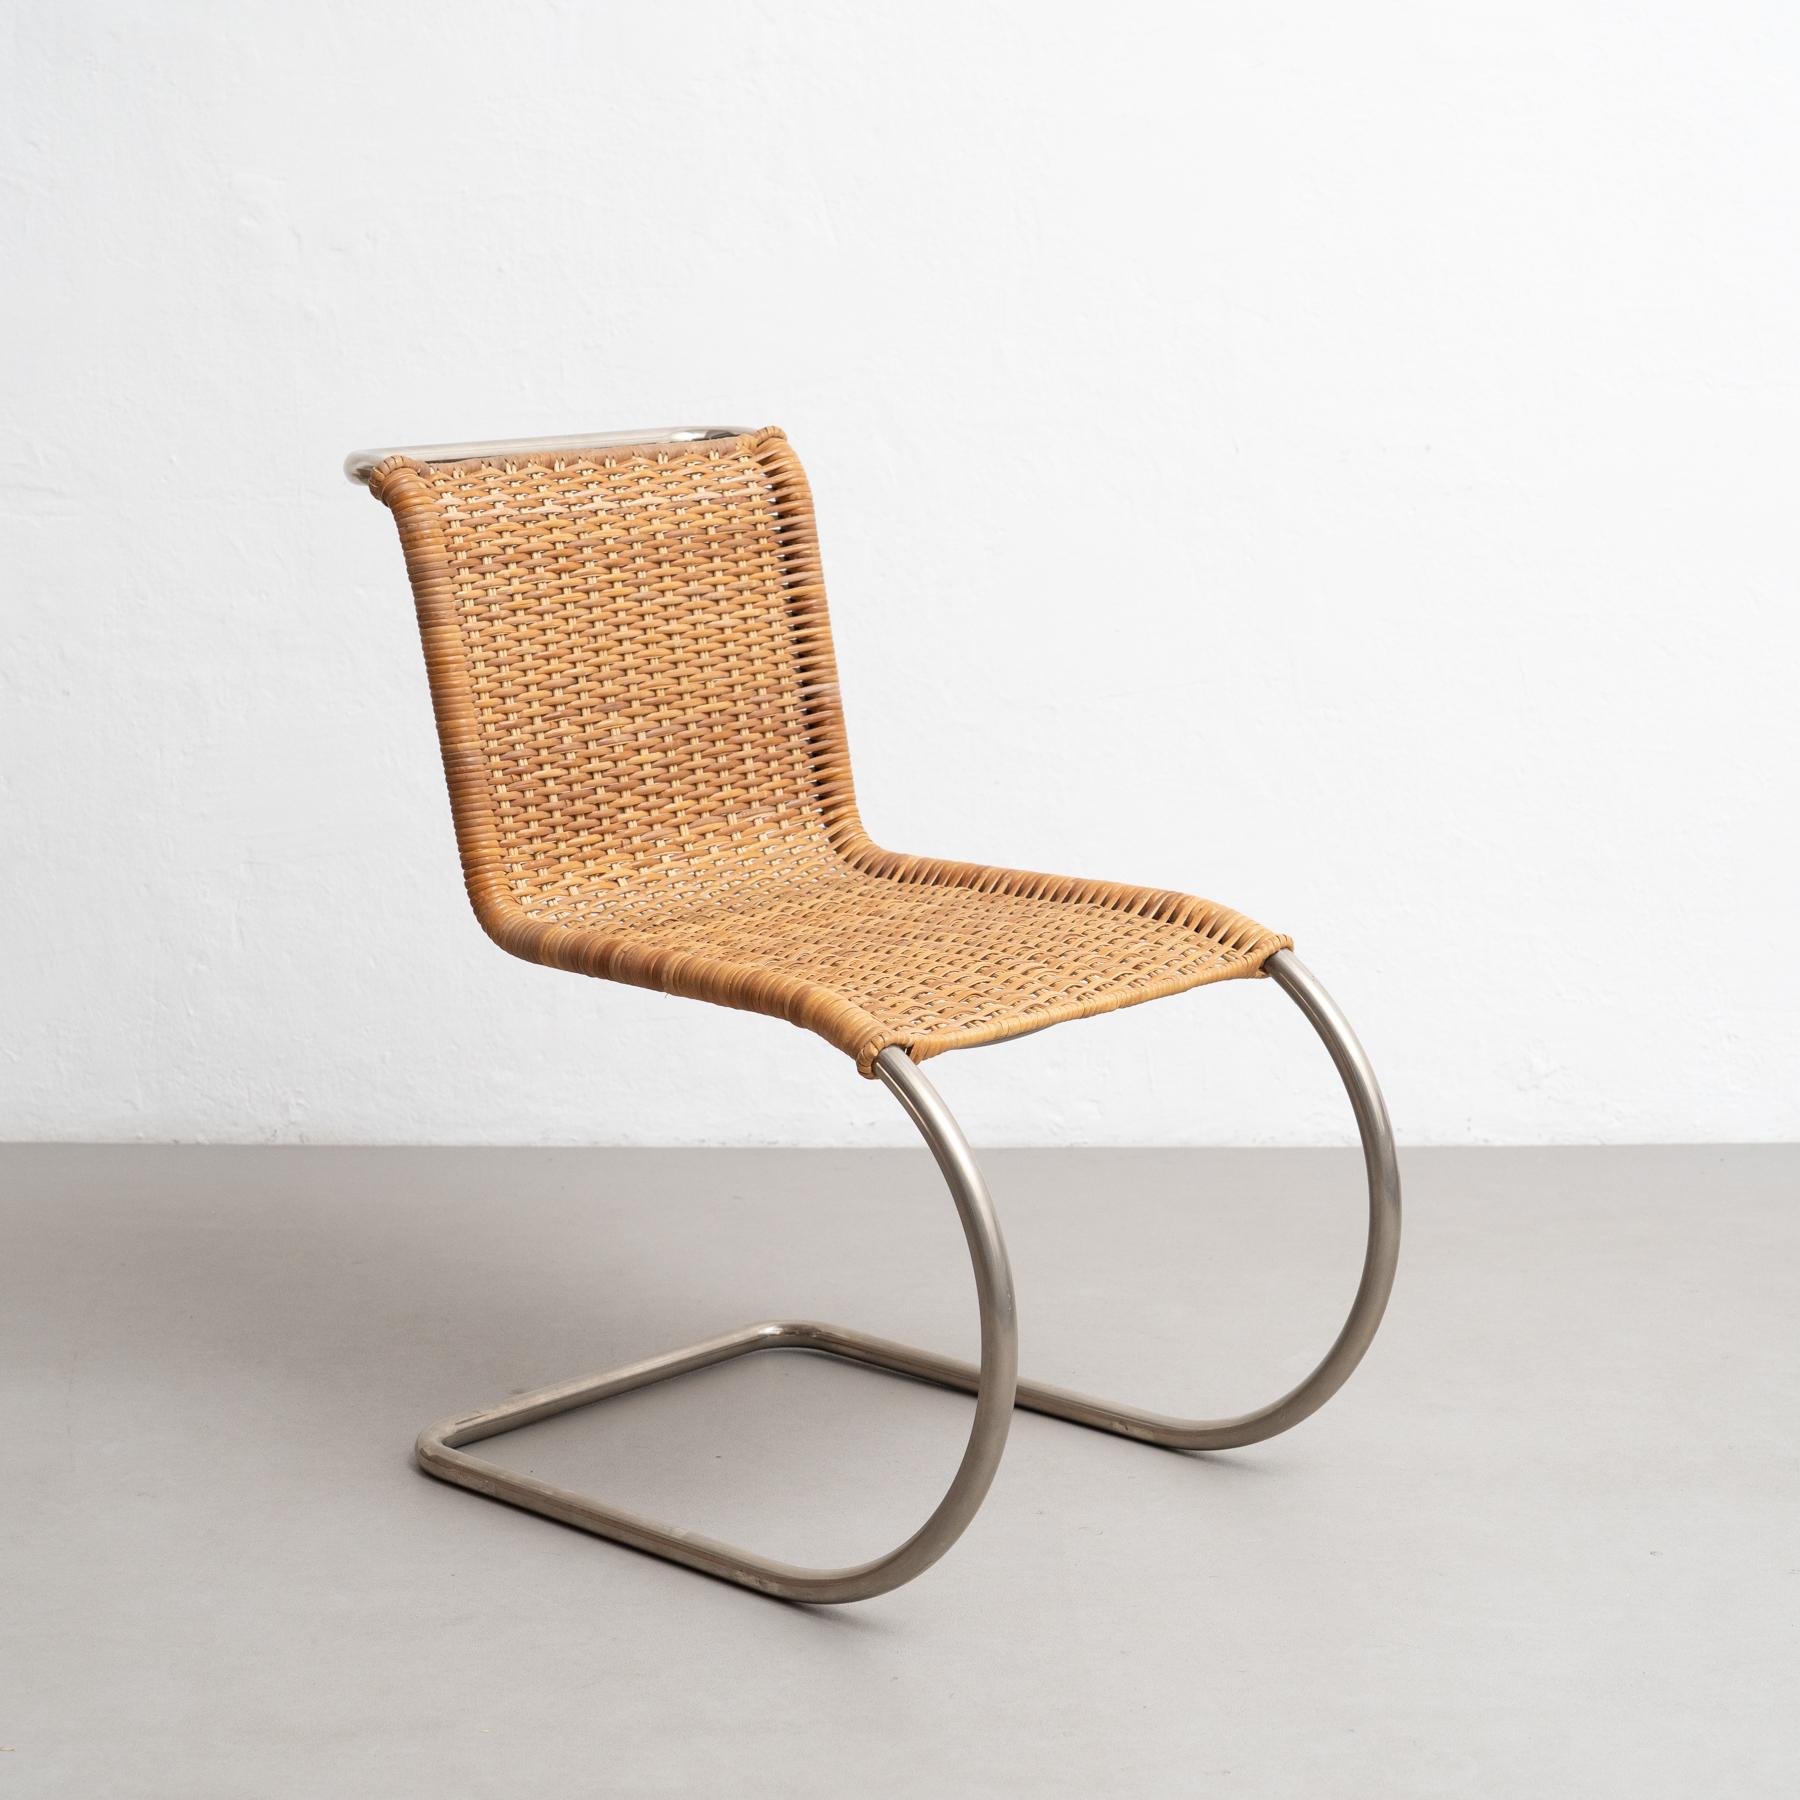 Cette chaise MR10 conçue par Ludwig Mies van der Rohe en 1927 est un véritable chef-d'œuvre du design moderne. Fabriquées par Tecta en Allemagne vers 1960, ces chaises témoignent de la popularité durable des designs innovants et intemporels de Mies